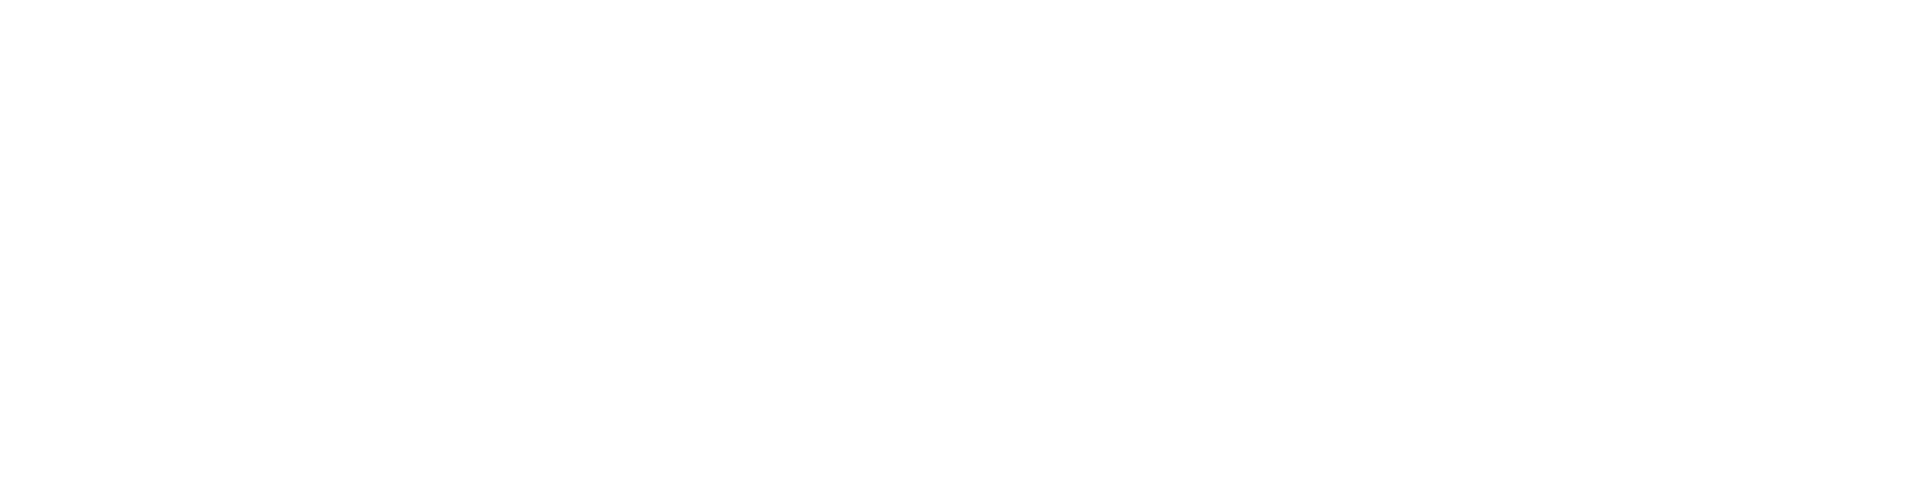 form_bnr_top_h490